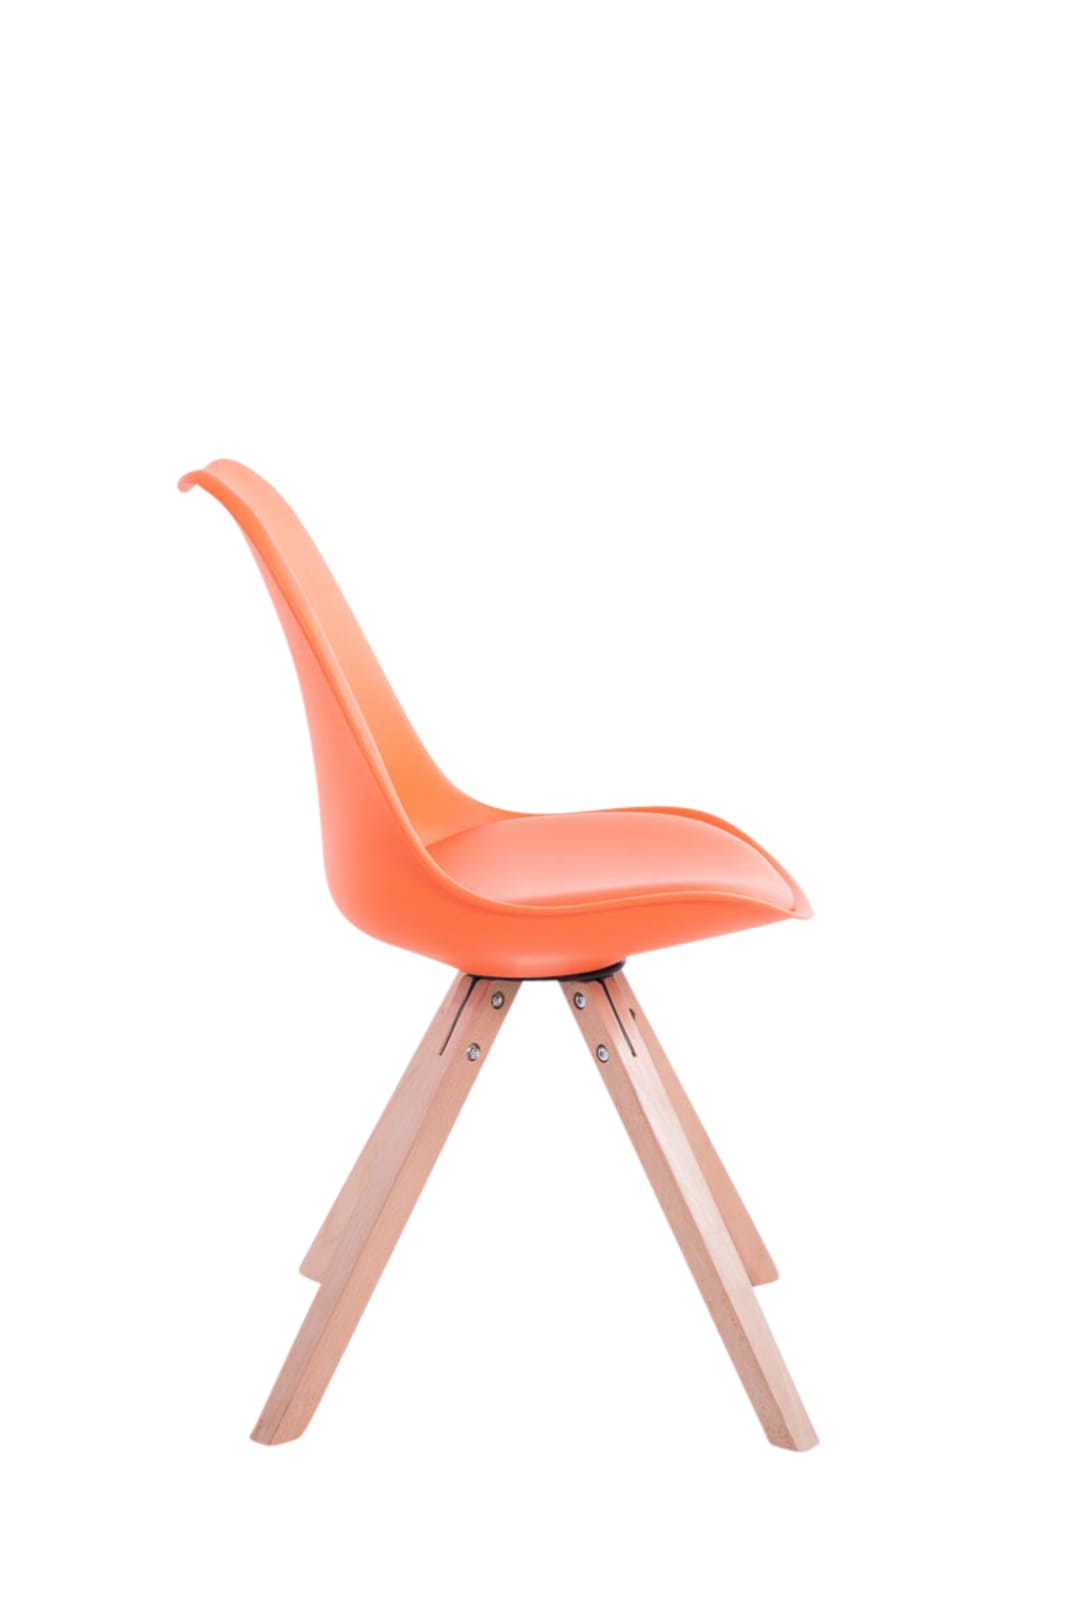 4er Set Stühle Toulouse Kunstleder Square orange natura